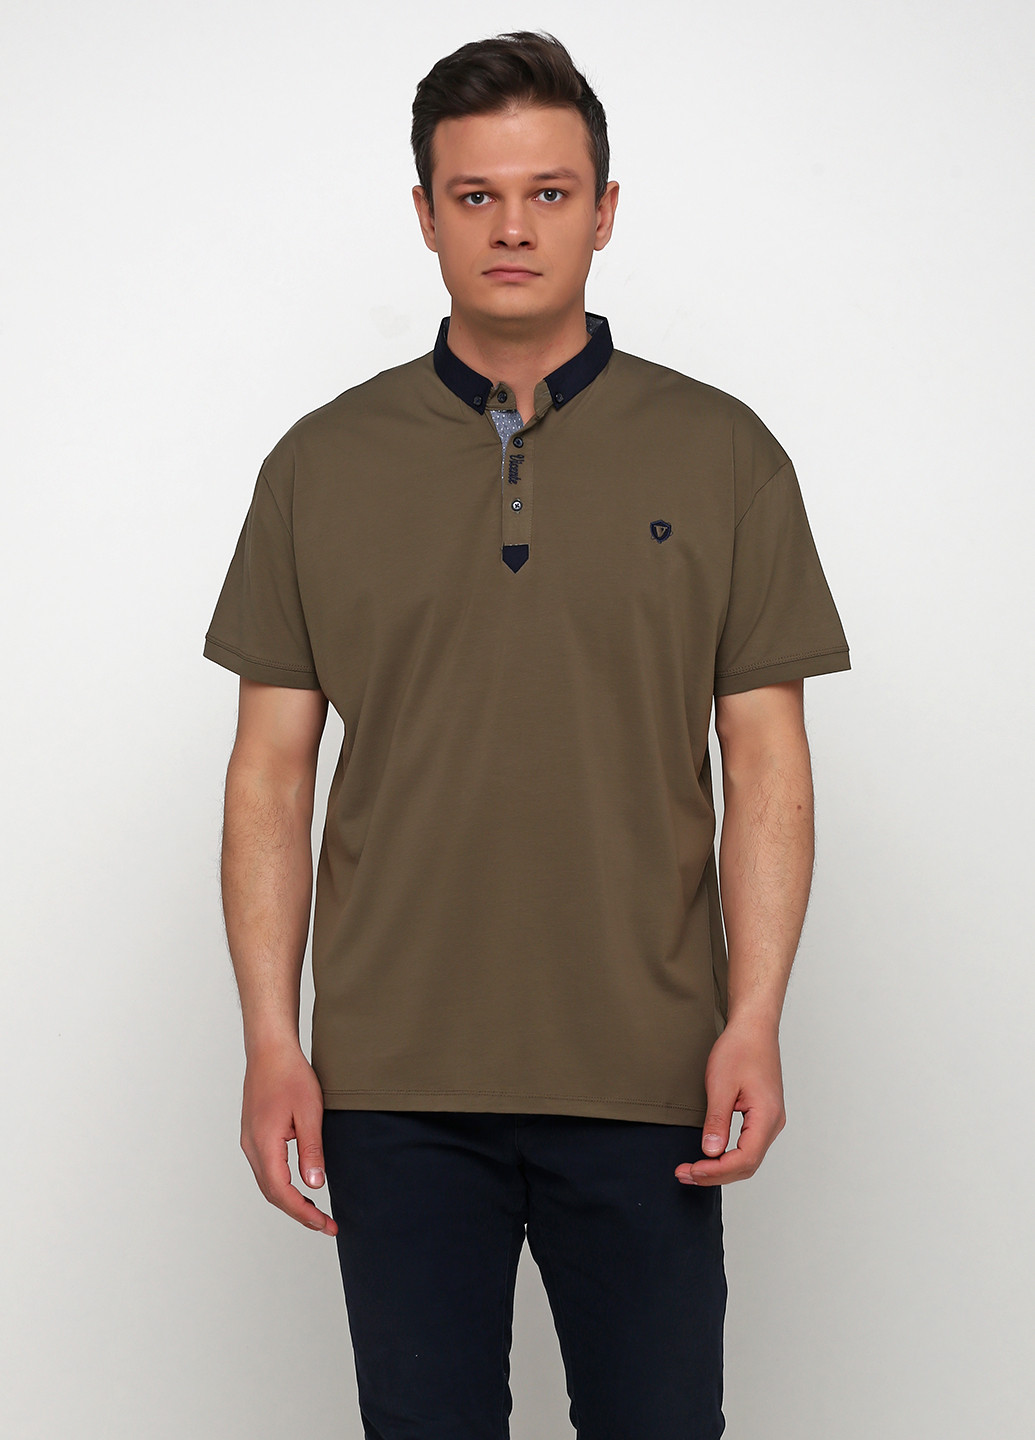 Оливковая (хаки) футболка-поло для мужчин Vip Ston однотонная